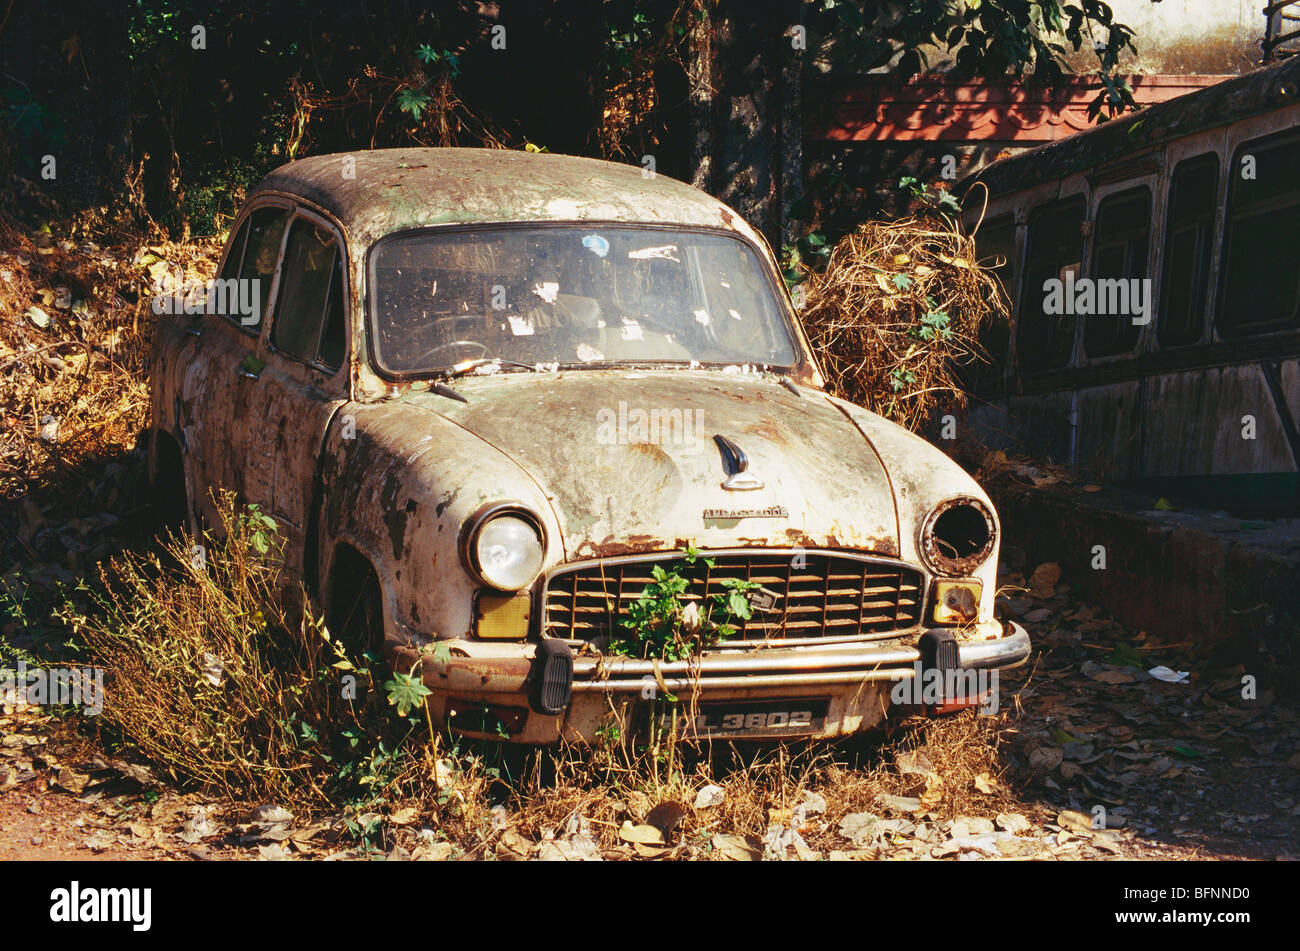 Ambassador car abandoned rusting ; India ; asia Stock Photo - Alamy